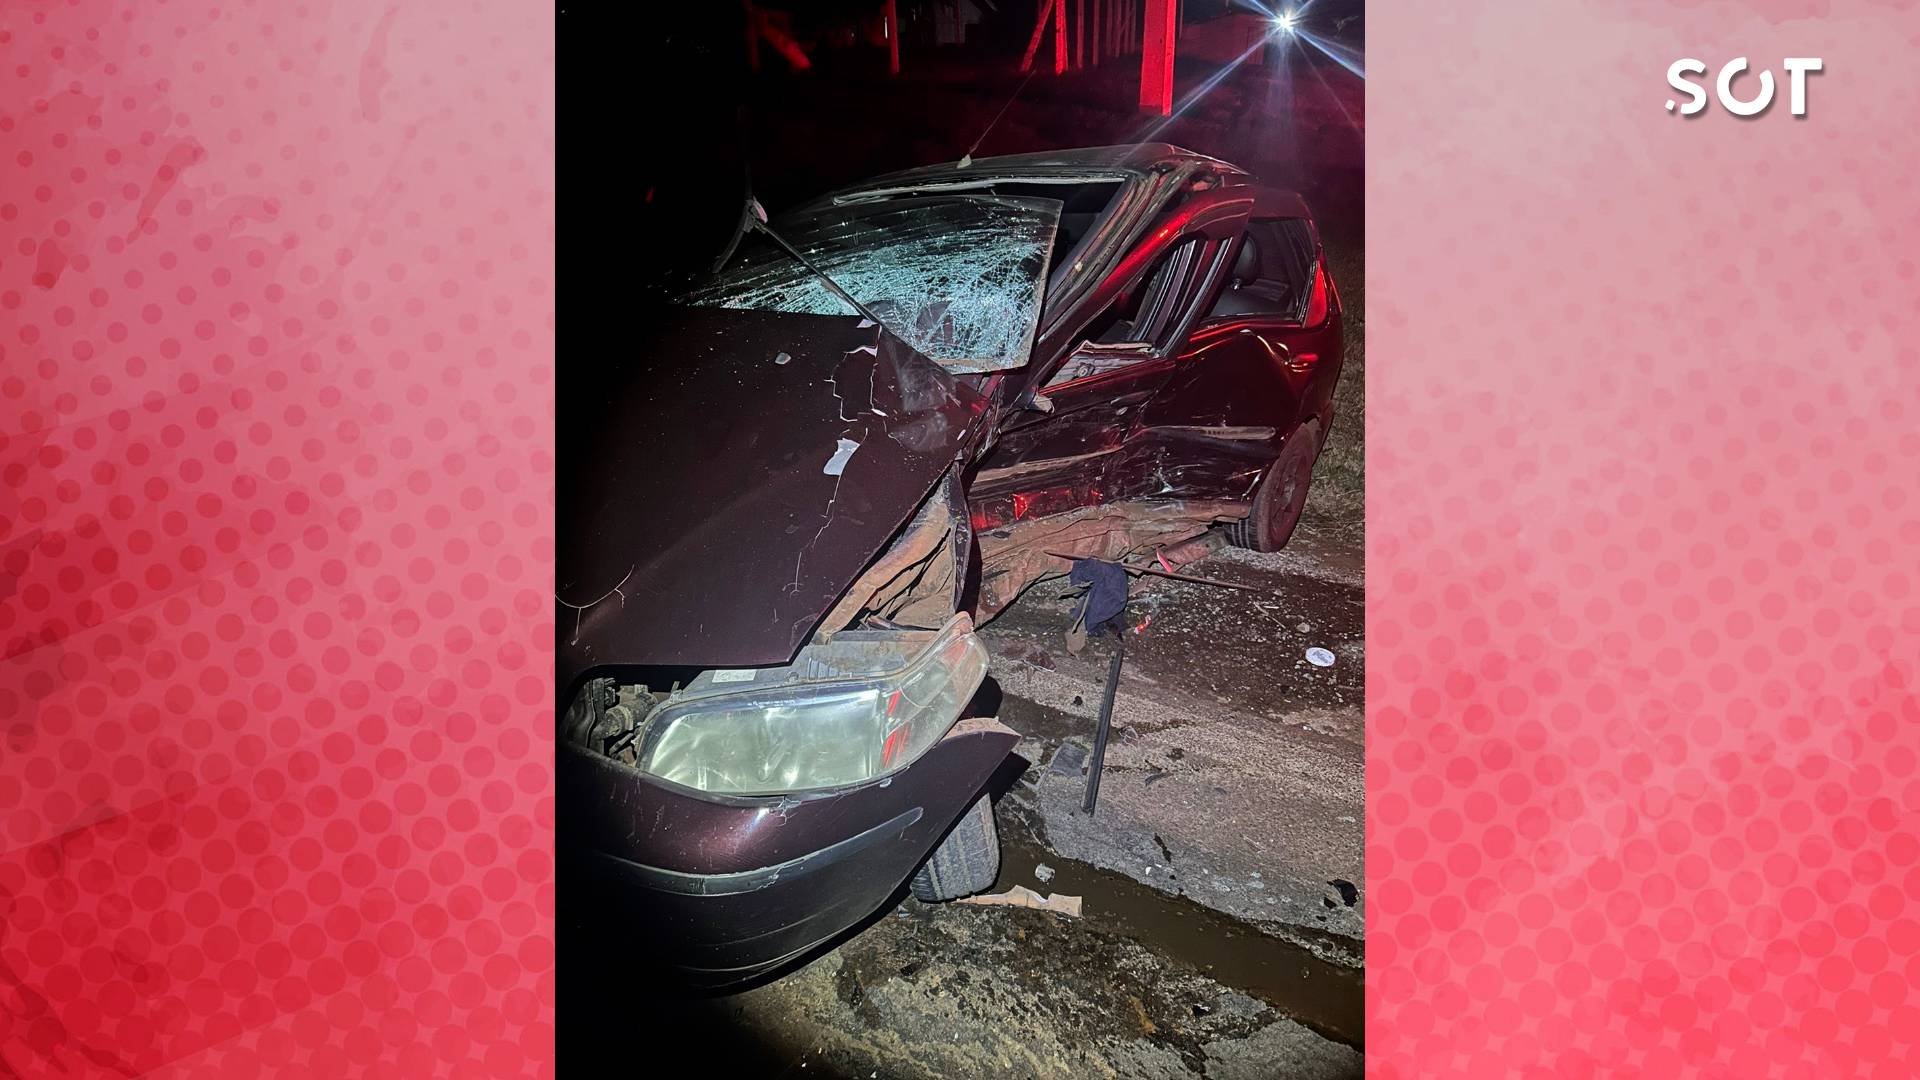 Duas pessoas ficam gravemente feridas em forte colisão na  PR-495 em Pato Bragado